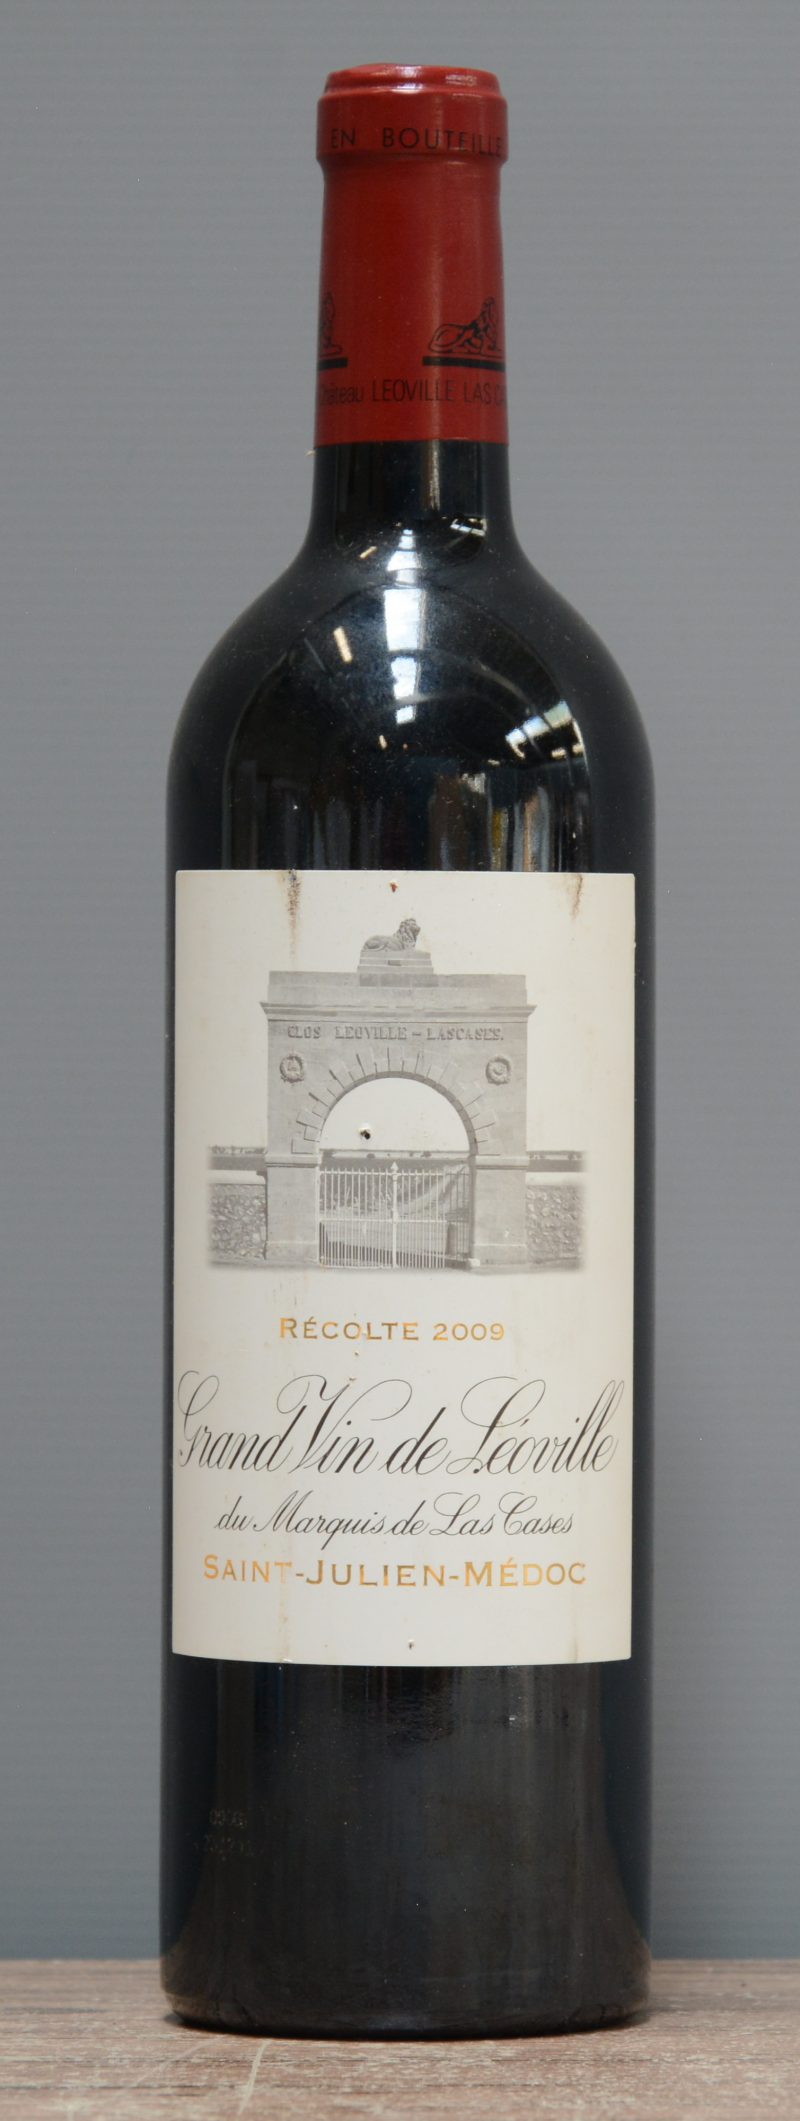 Grand Vin de Léoville du Marquis de Las Cases A.C Saint-Julien-Médoc   M.C.  2009  aantal: 1 Bt.